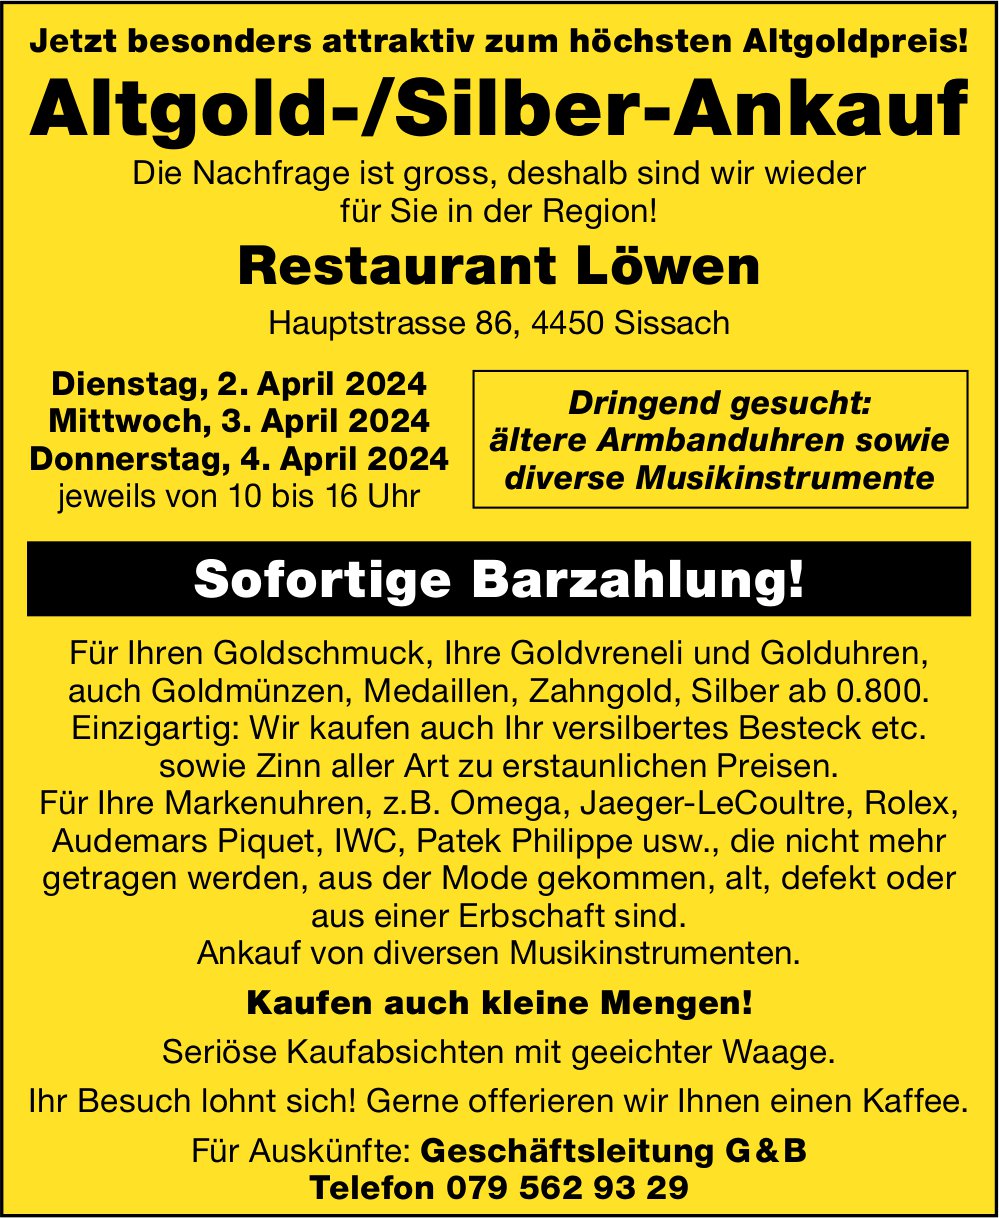 Altgold-/Silber-Ankauf, 2. - 4. April, Restaurant Löwen, Sissach